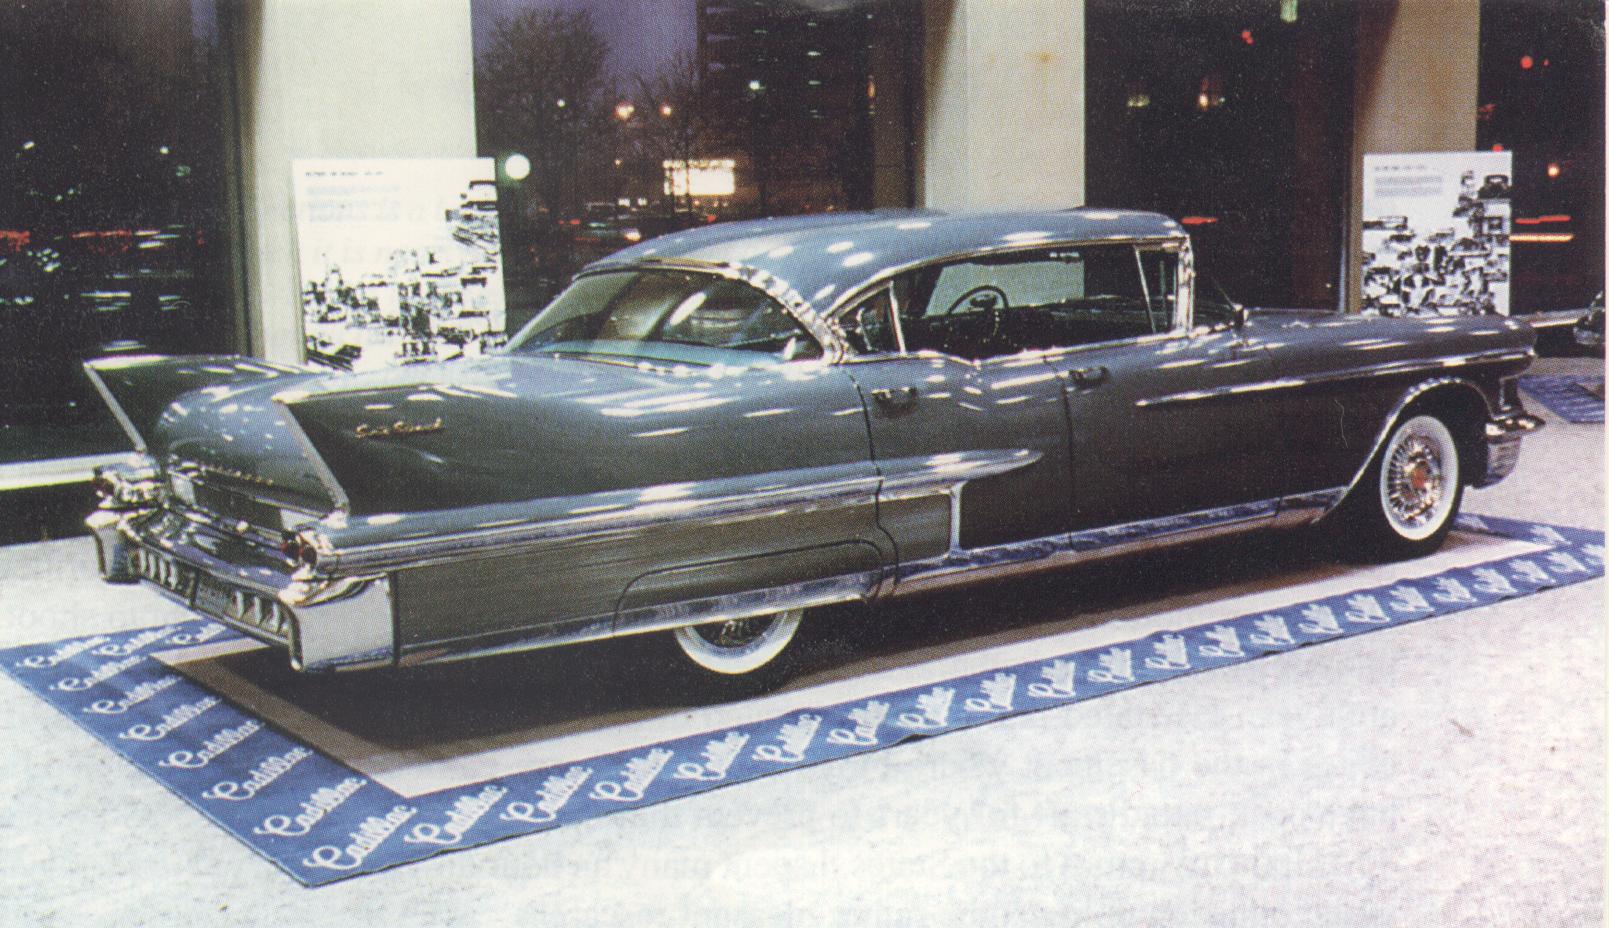 1958 Cadillac Series 62 Image